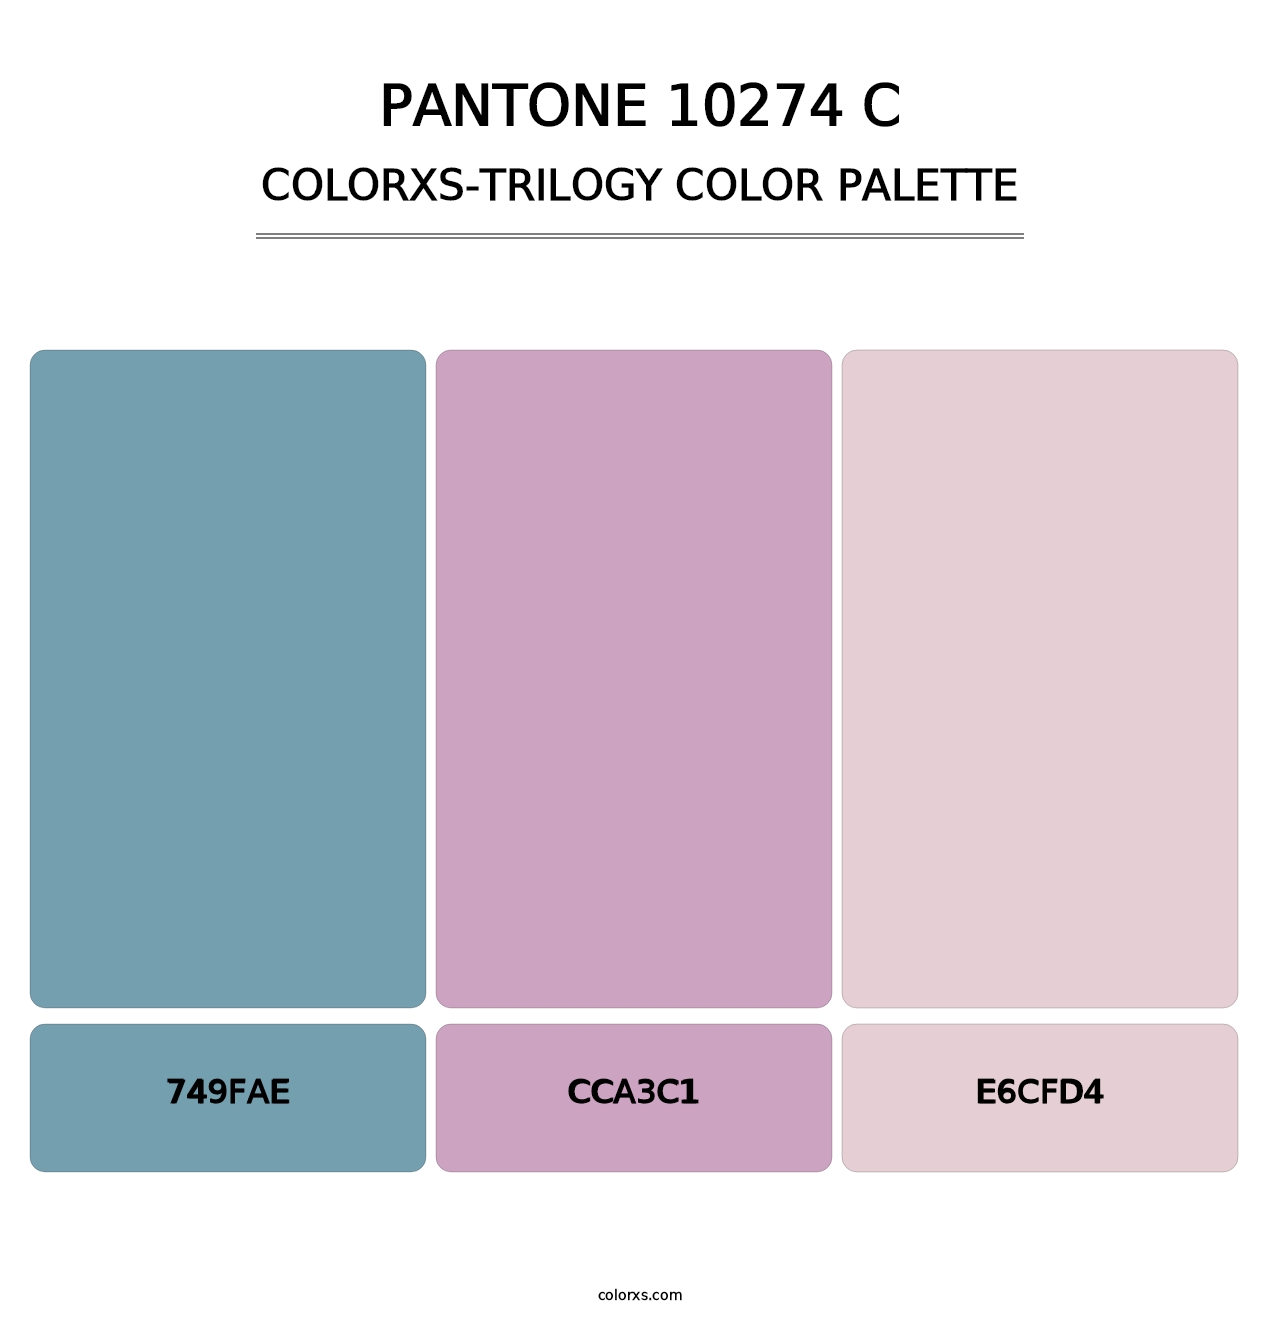 PANTONE 10274 C - Colorxs Trilogy Palette